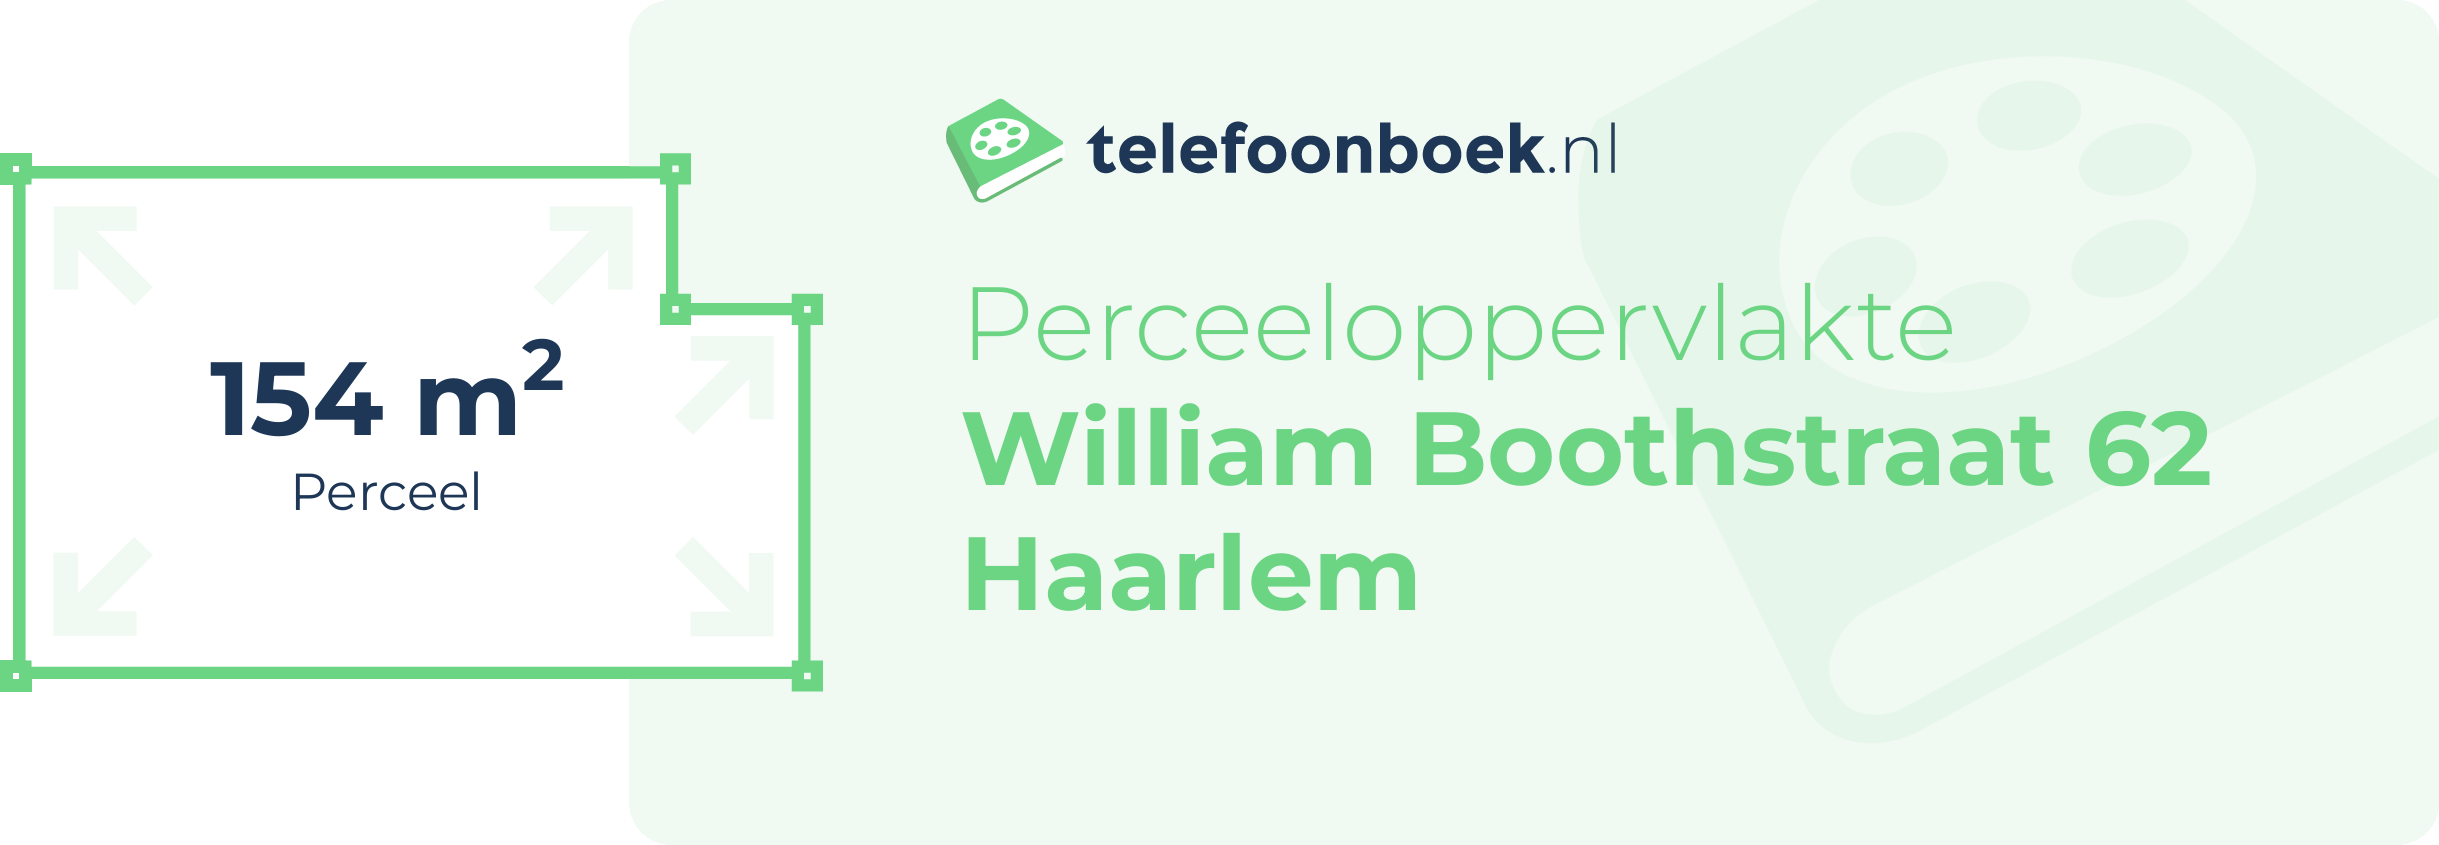 Perceeloppervlakte William Boothstraat 62 Haarlem